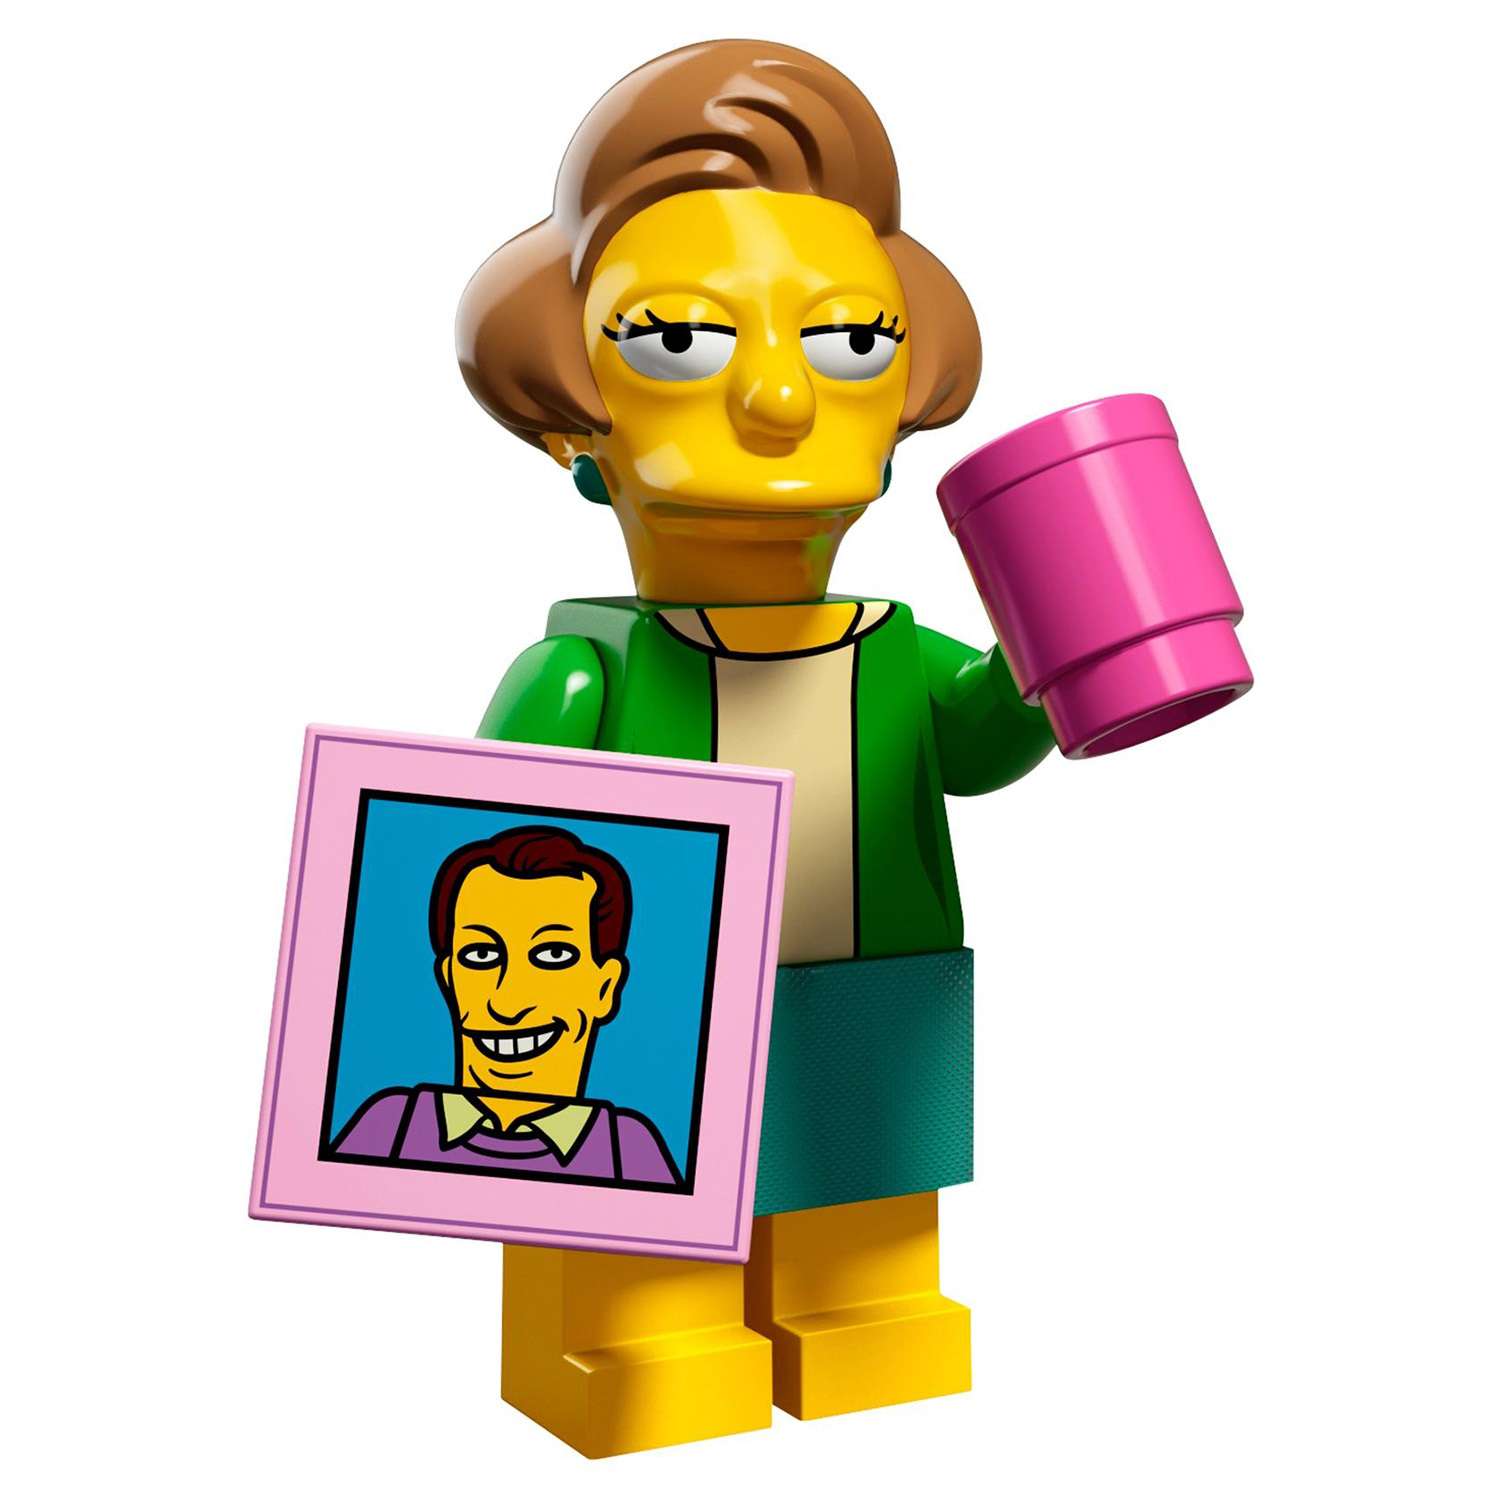 Конструктор LEGO Minifigures Минифигурки LEGO® Серия «Симпсоны» 2.0 (71009) - фото 35